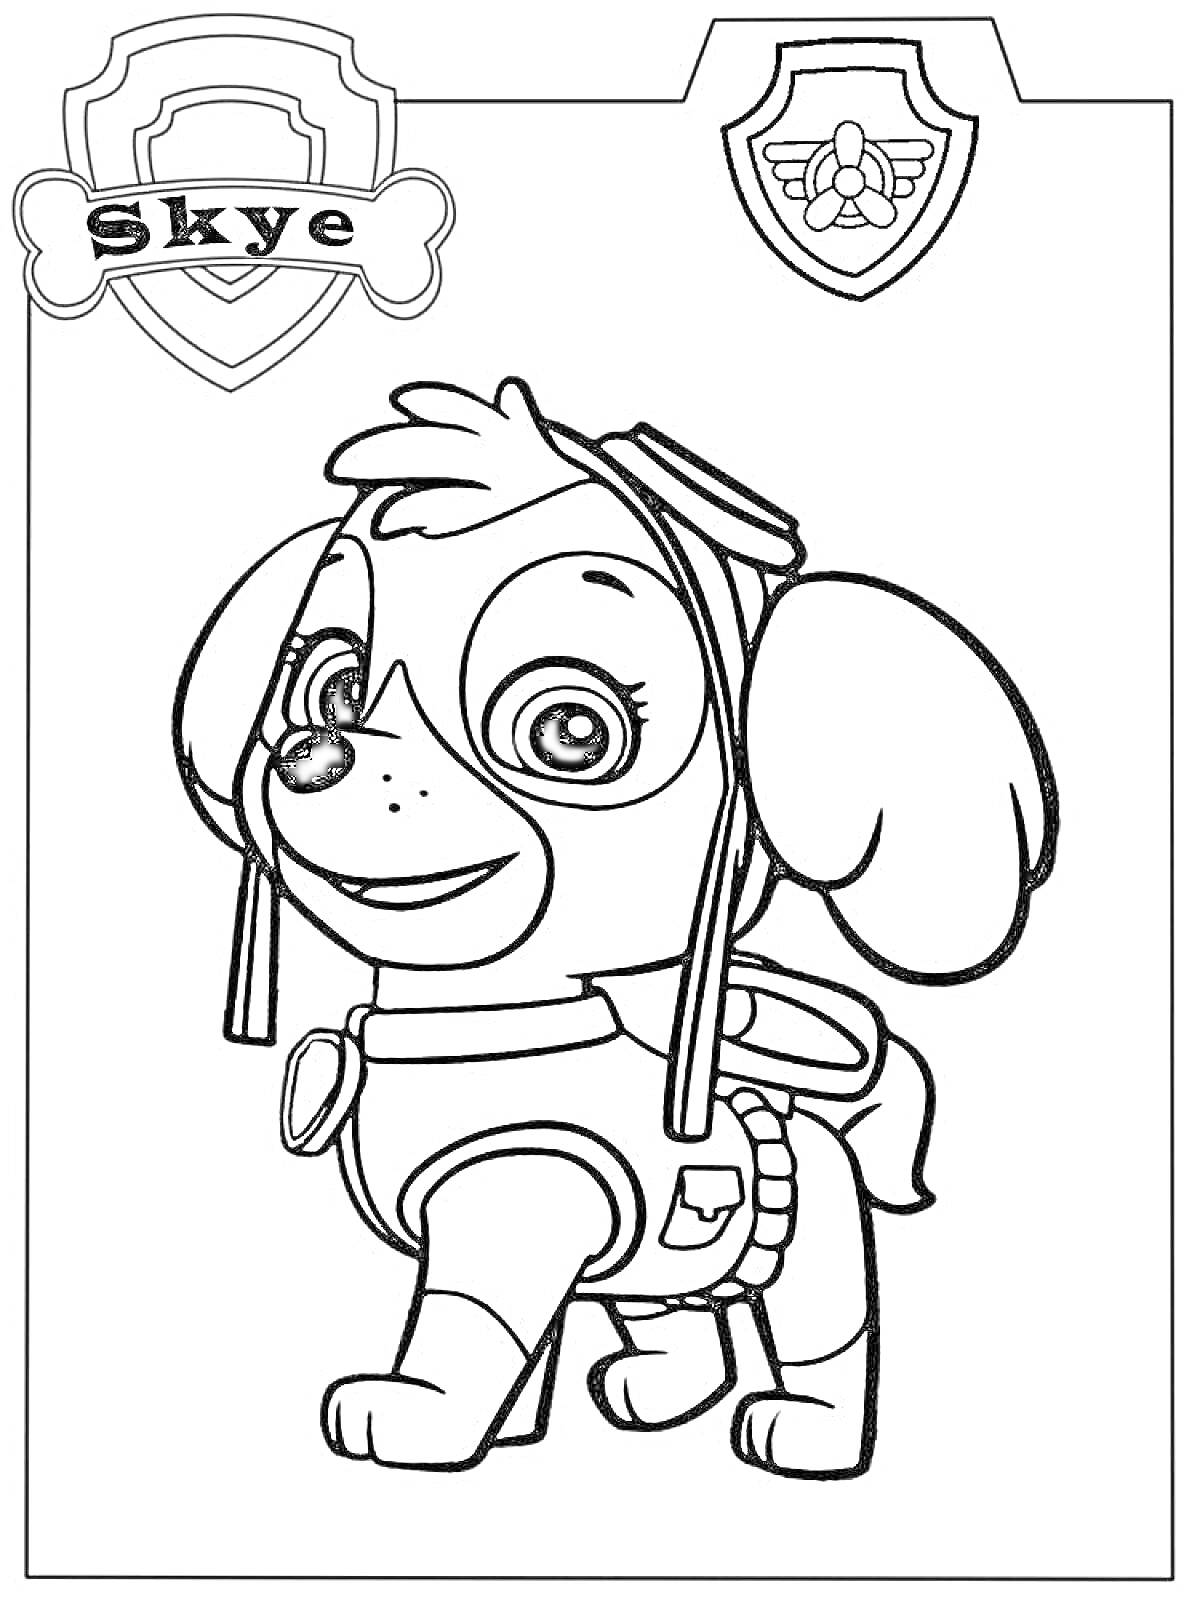 Раскраска Скай из Щенячьего патруля в костюме летчика с эмблемами